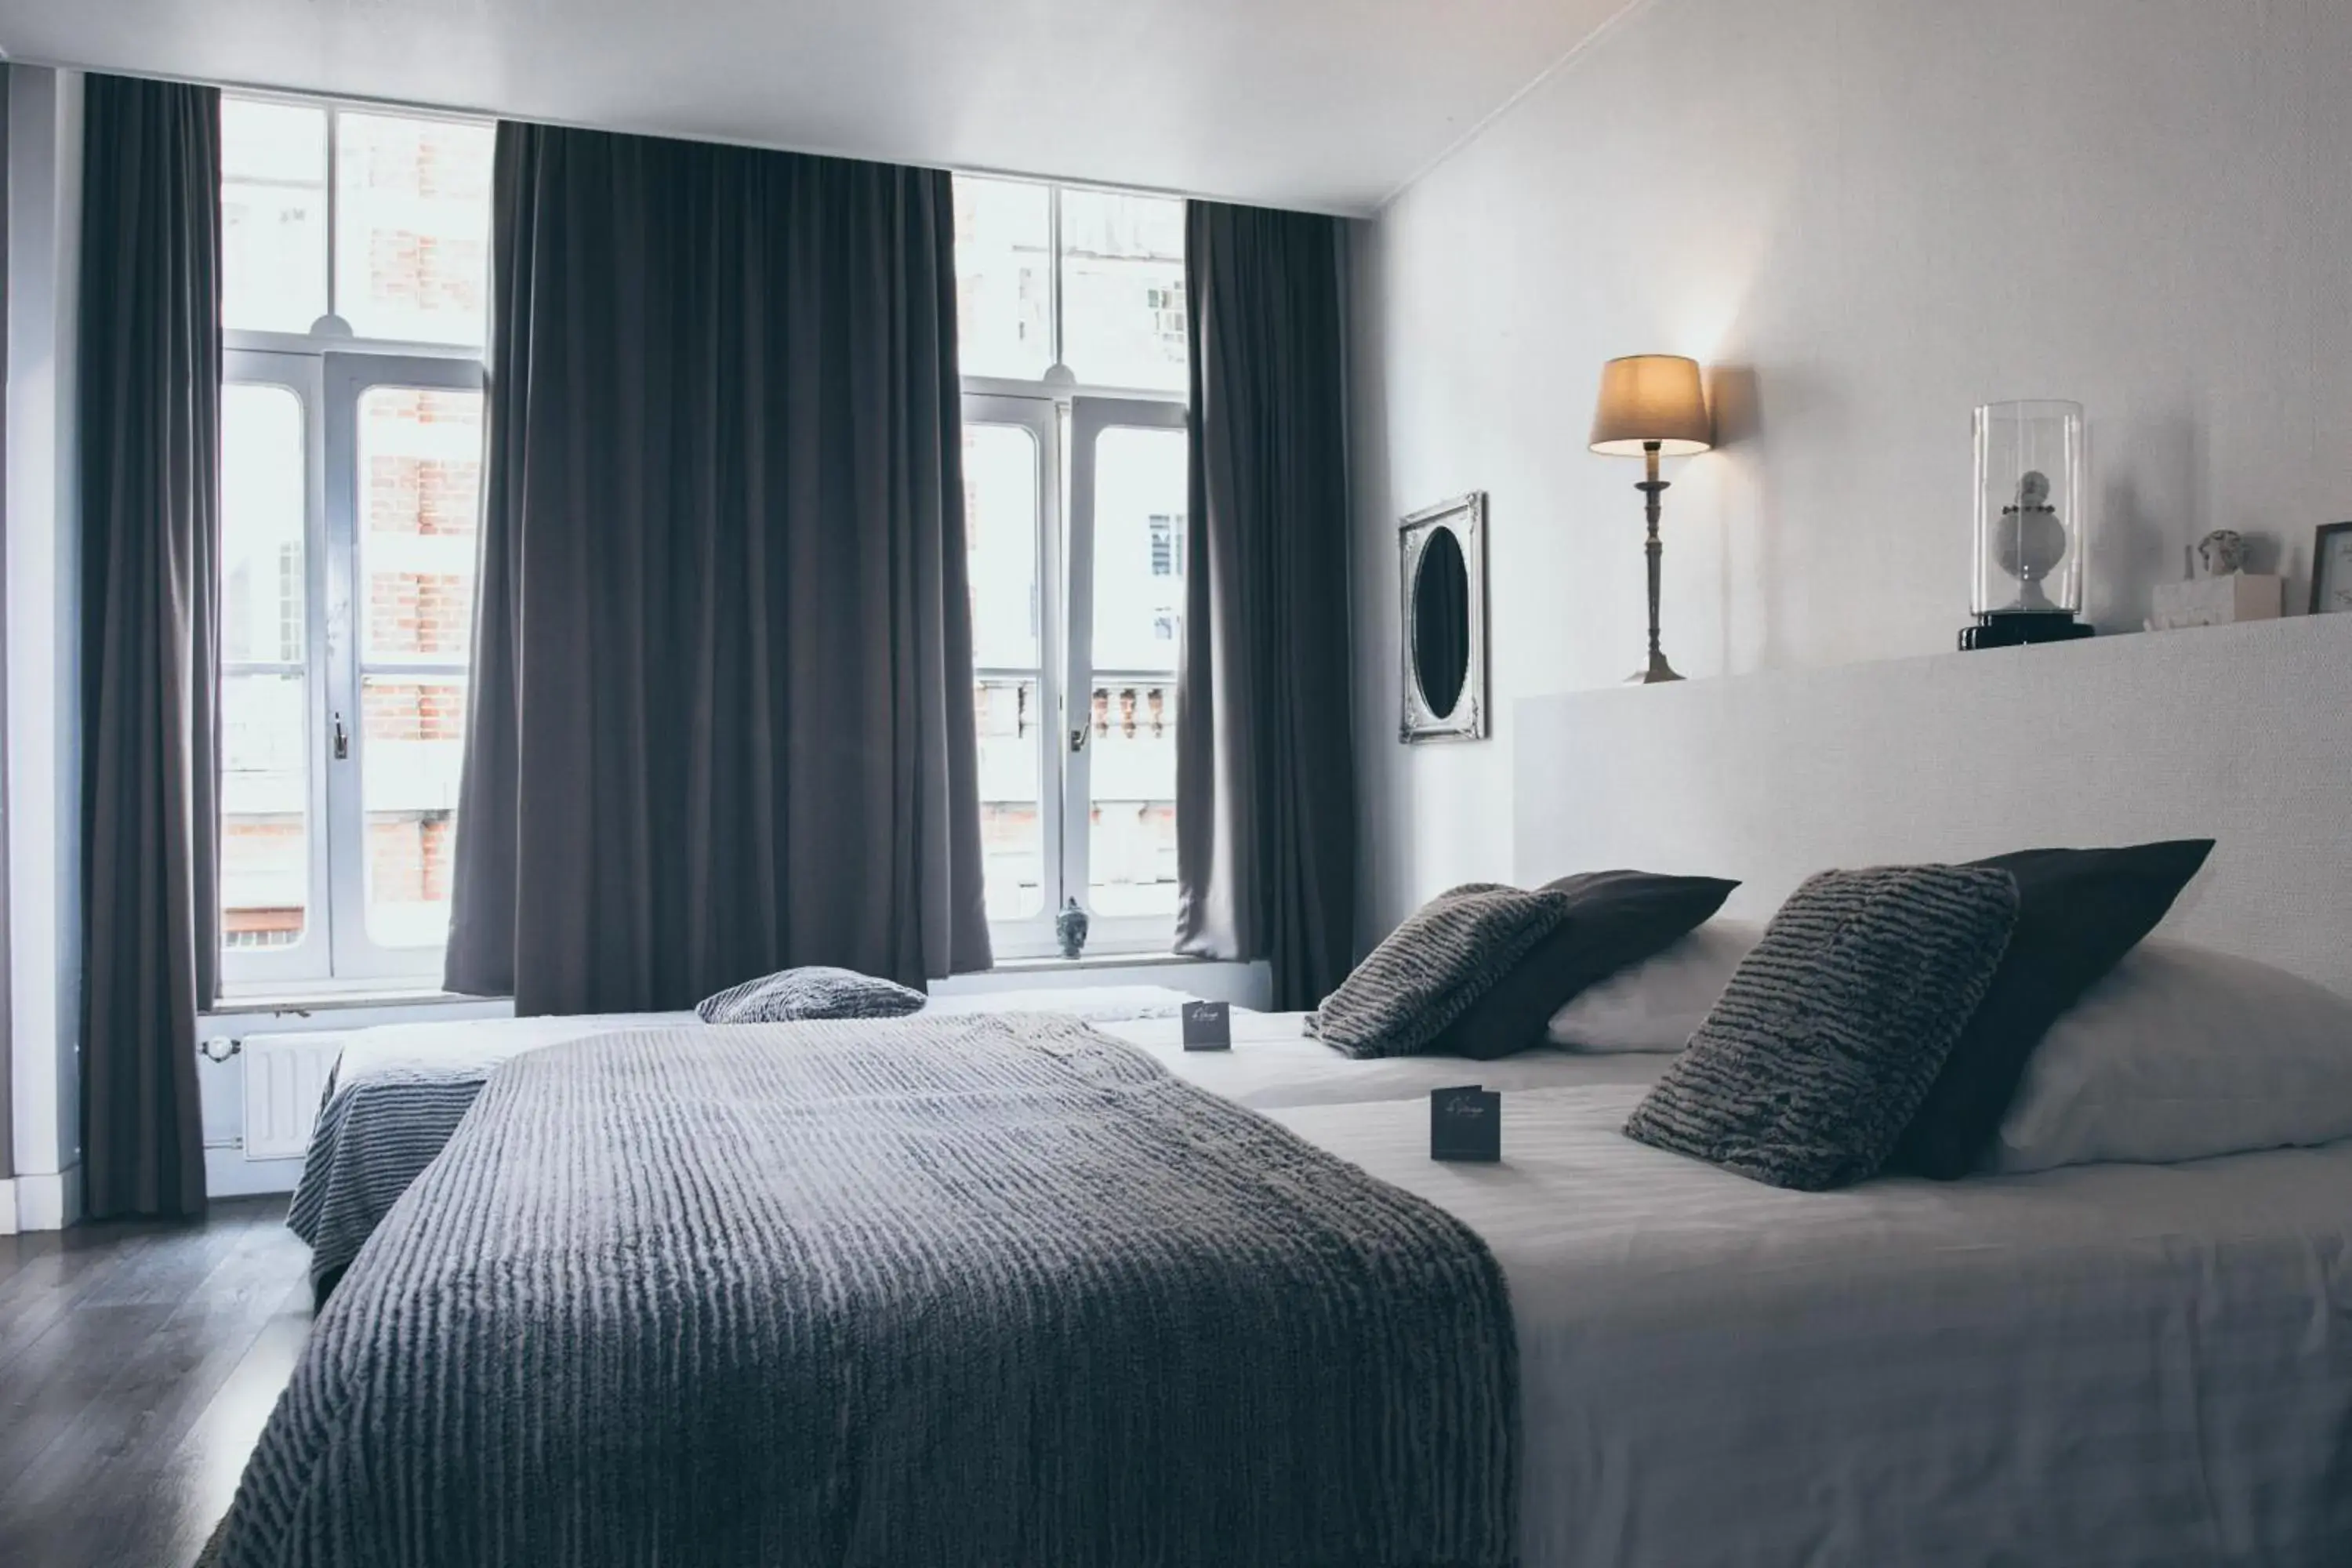 Bed, Room Photo in Le Virage bistro en hotel